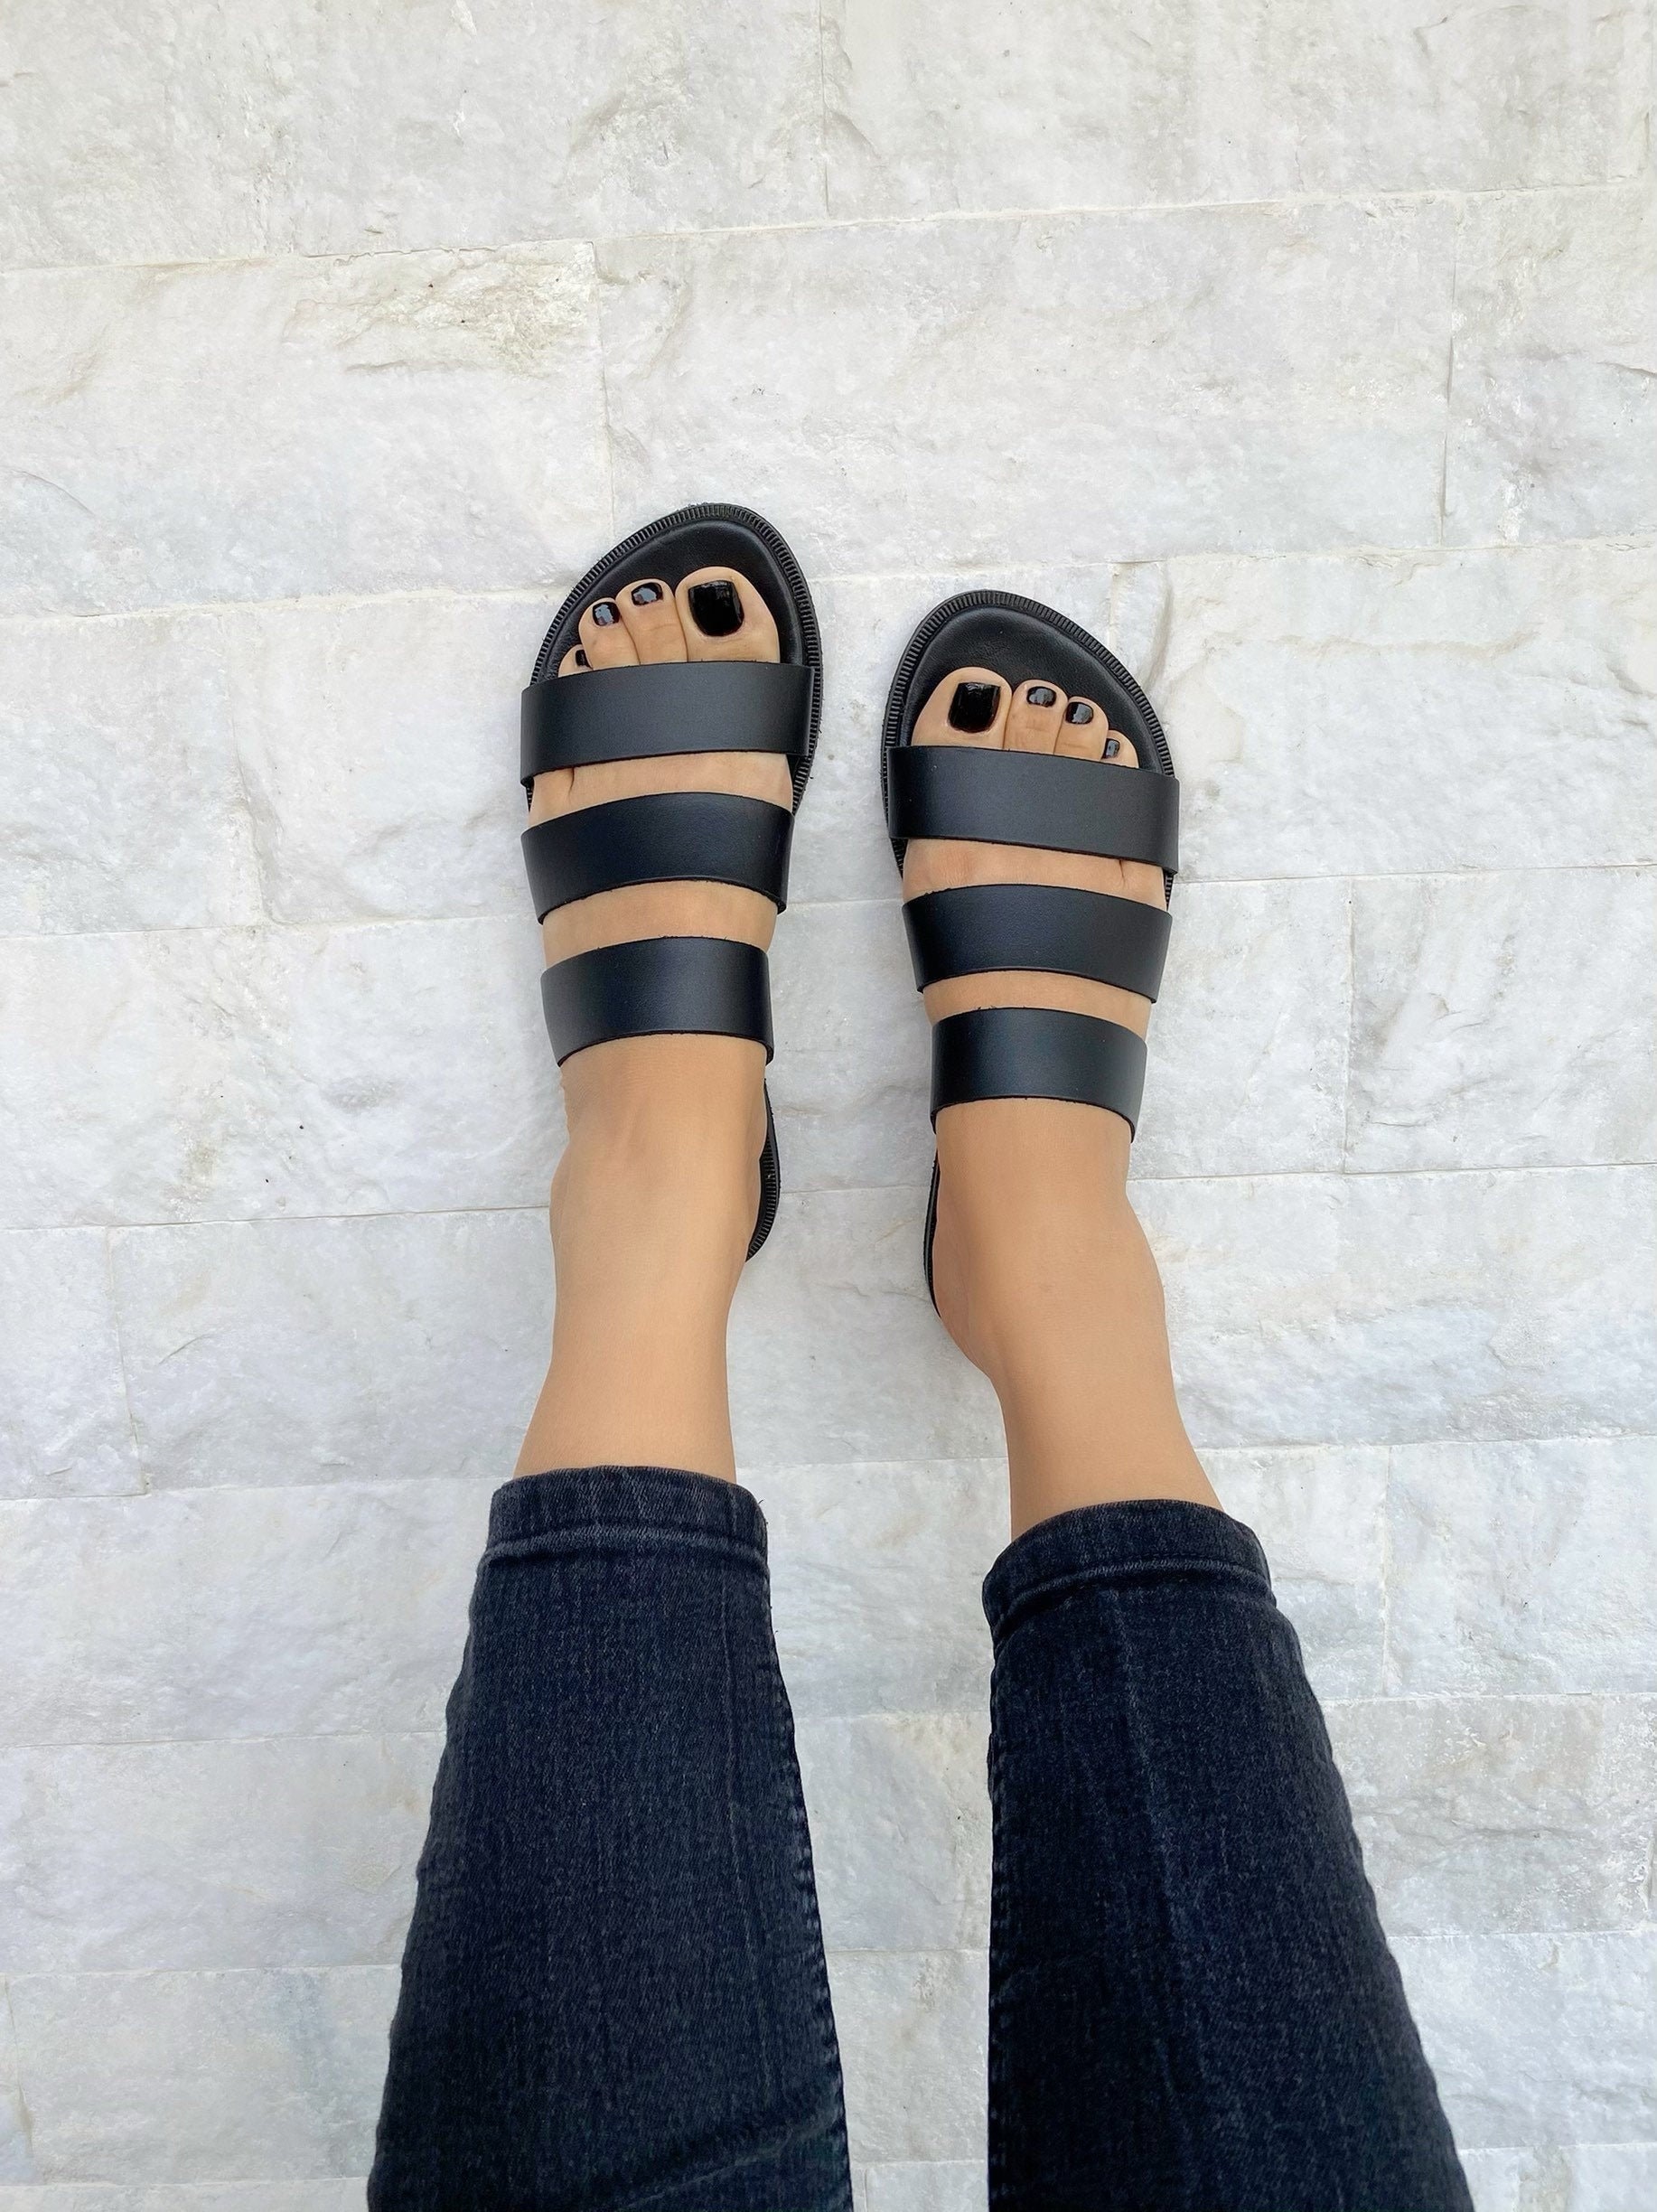 Soft Sandals Greek Leather Sandals Handmade Sandals Black | Etsy